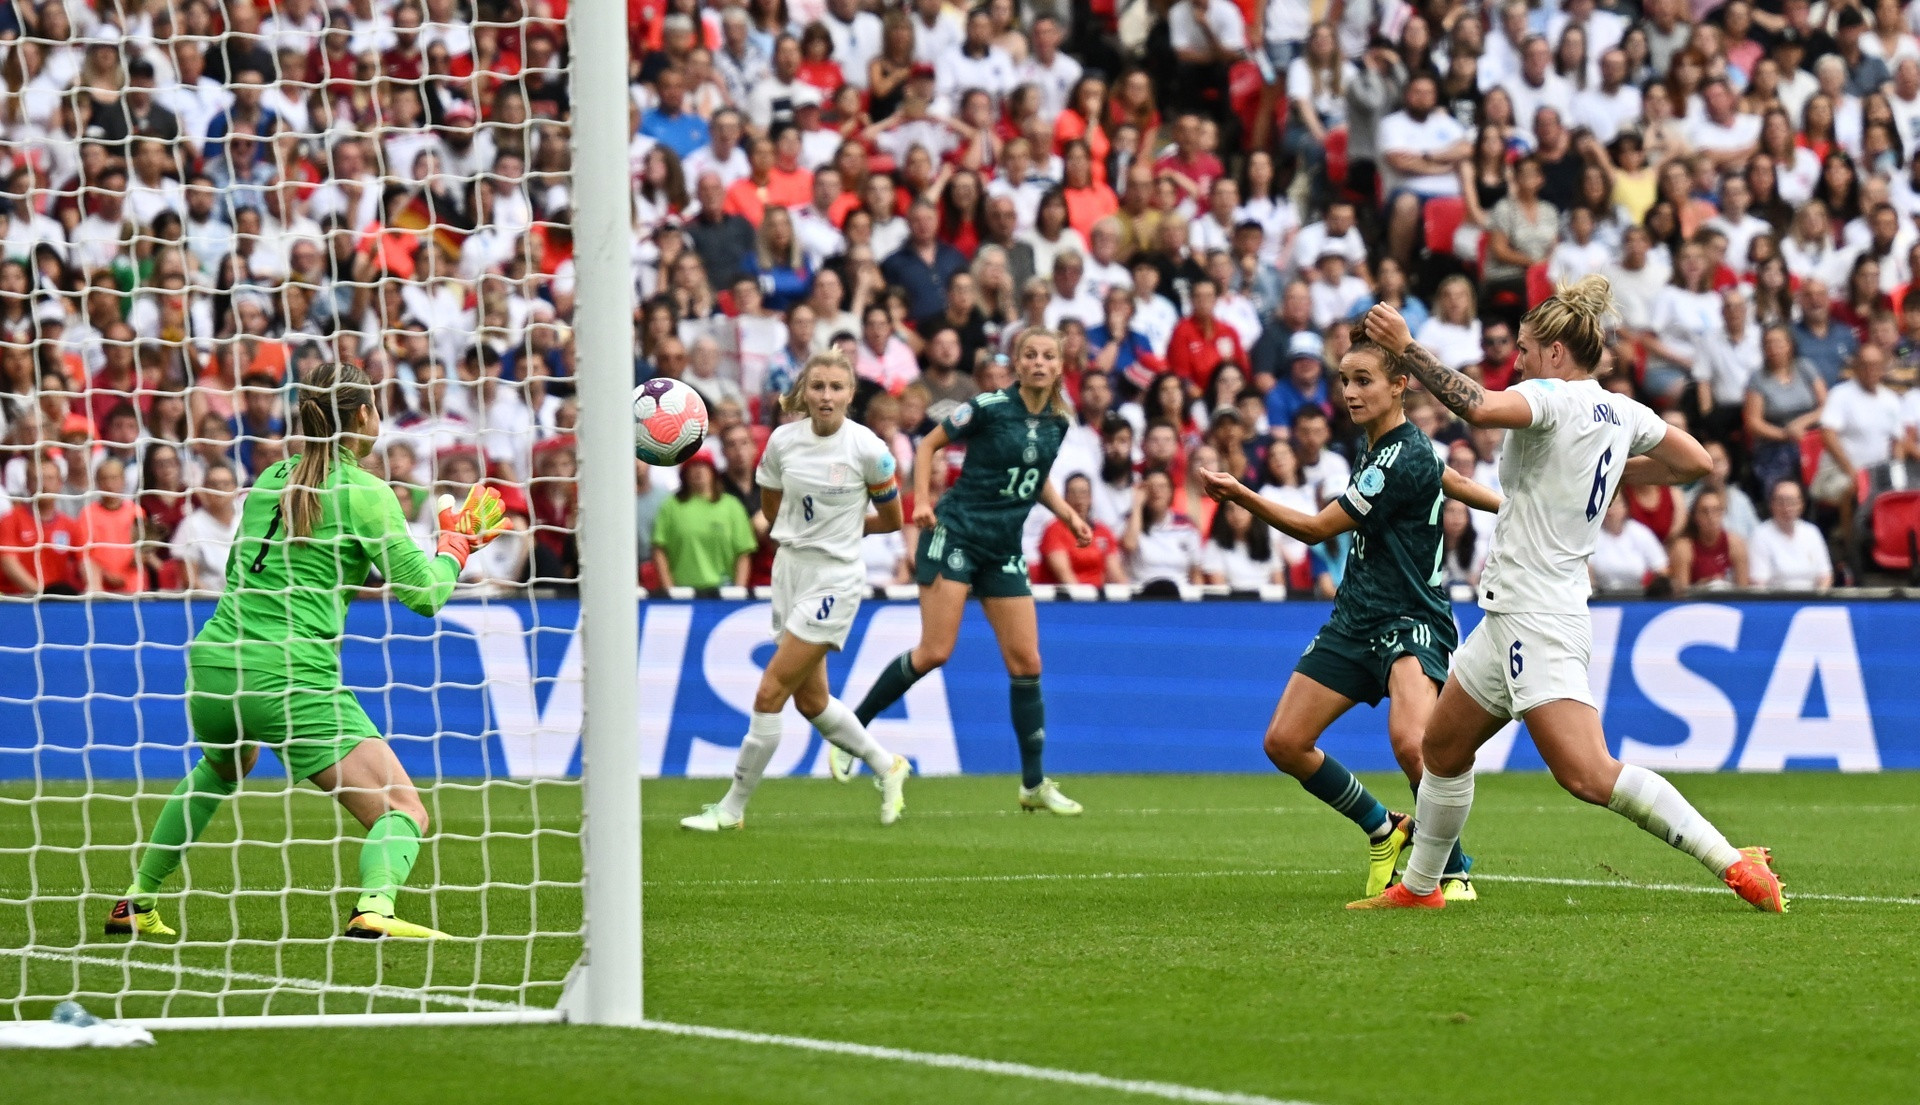 Nữ cầu thủ cởi áo ăn mừng bàn thắng giúp tuyển Anh vô địch EURO 2022 - 7